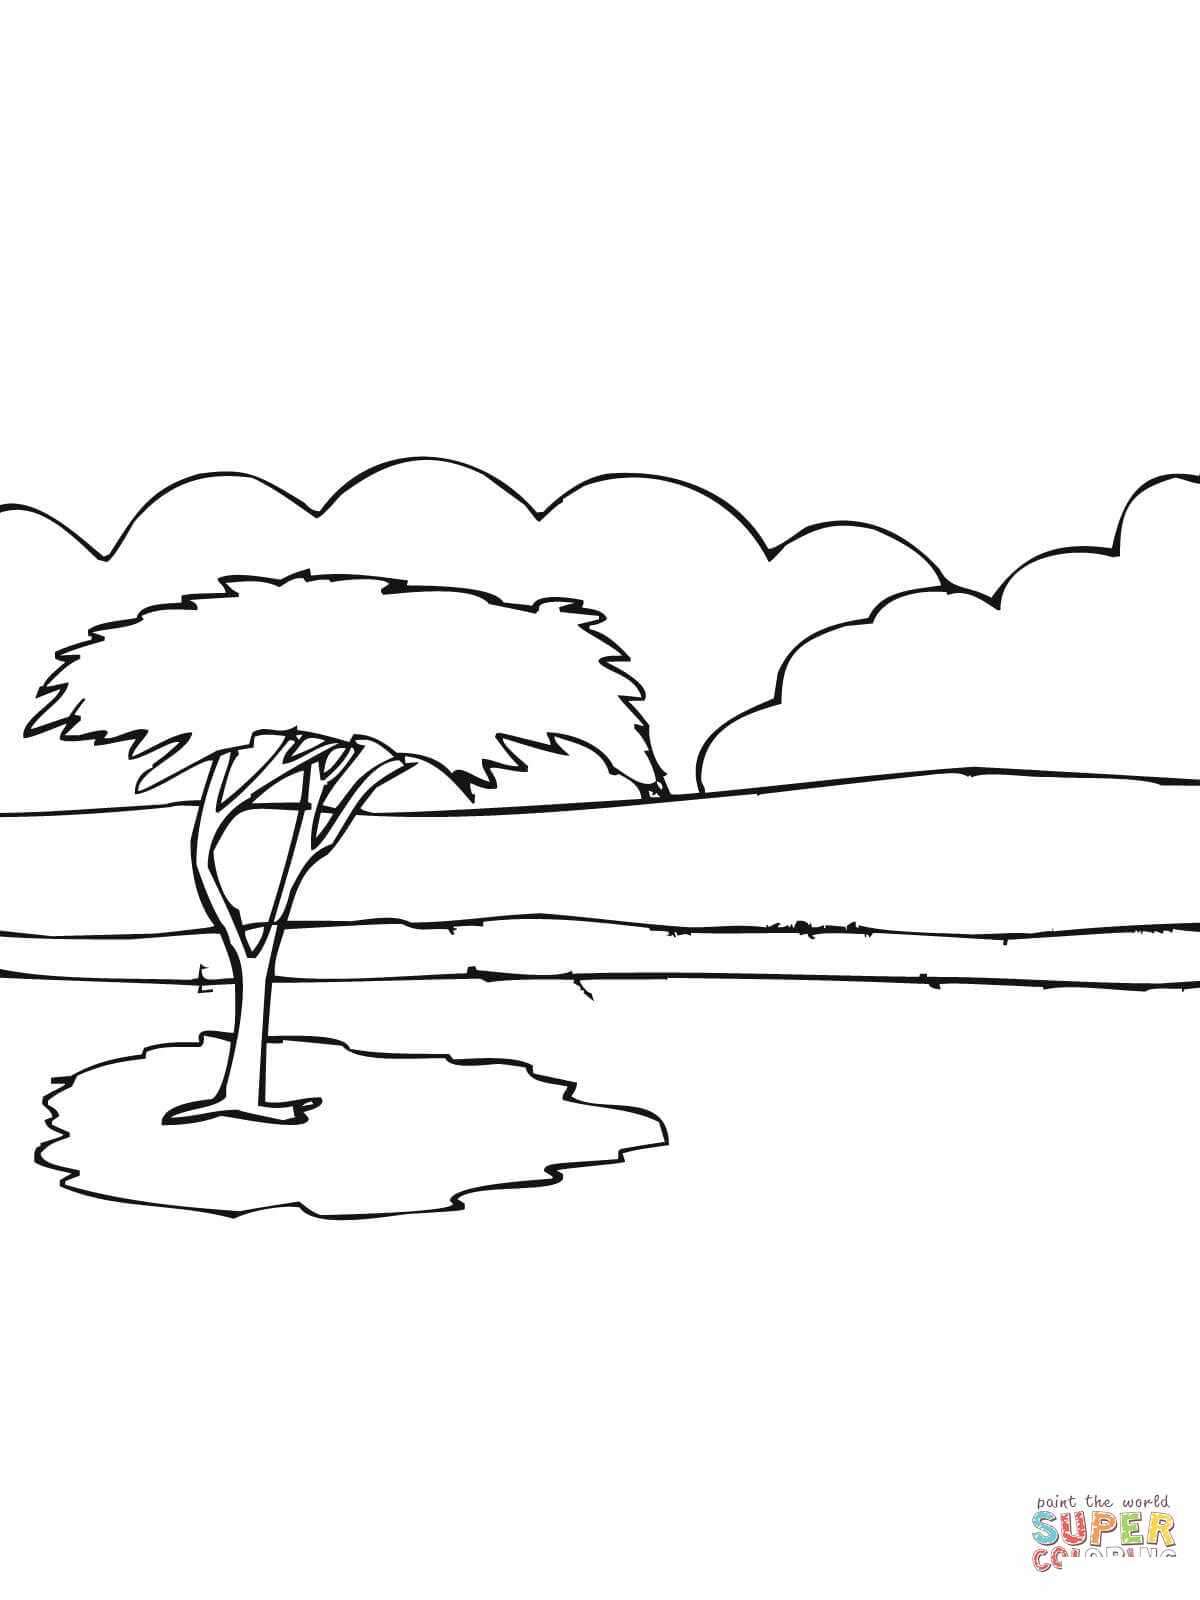 Árbol de acacia africana